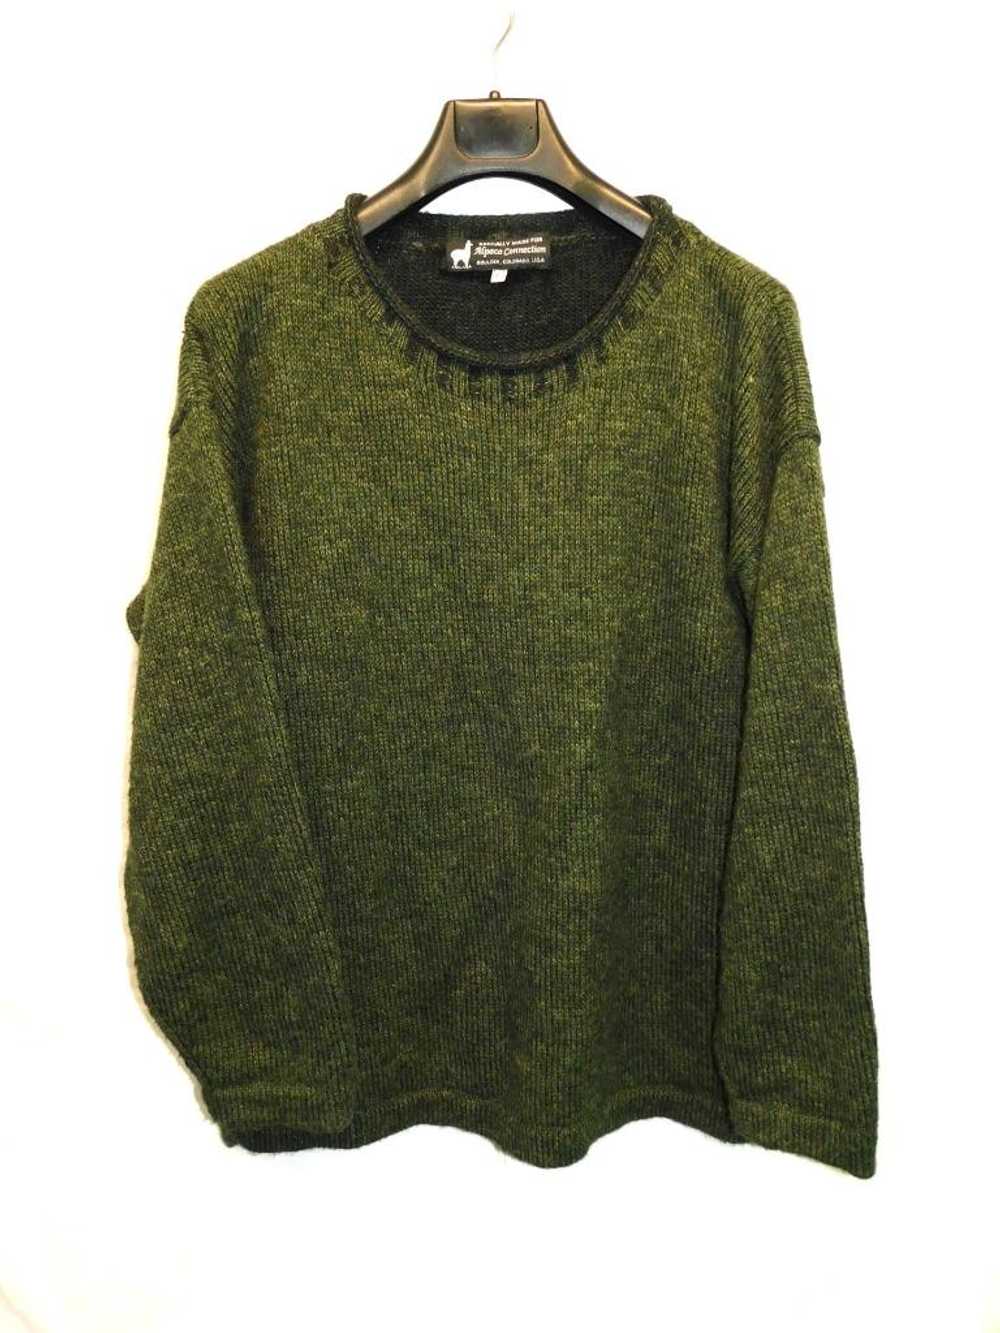 Alpaca Connection L Dark Green Sweater Mens Pullo… - image 1